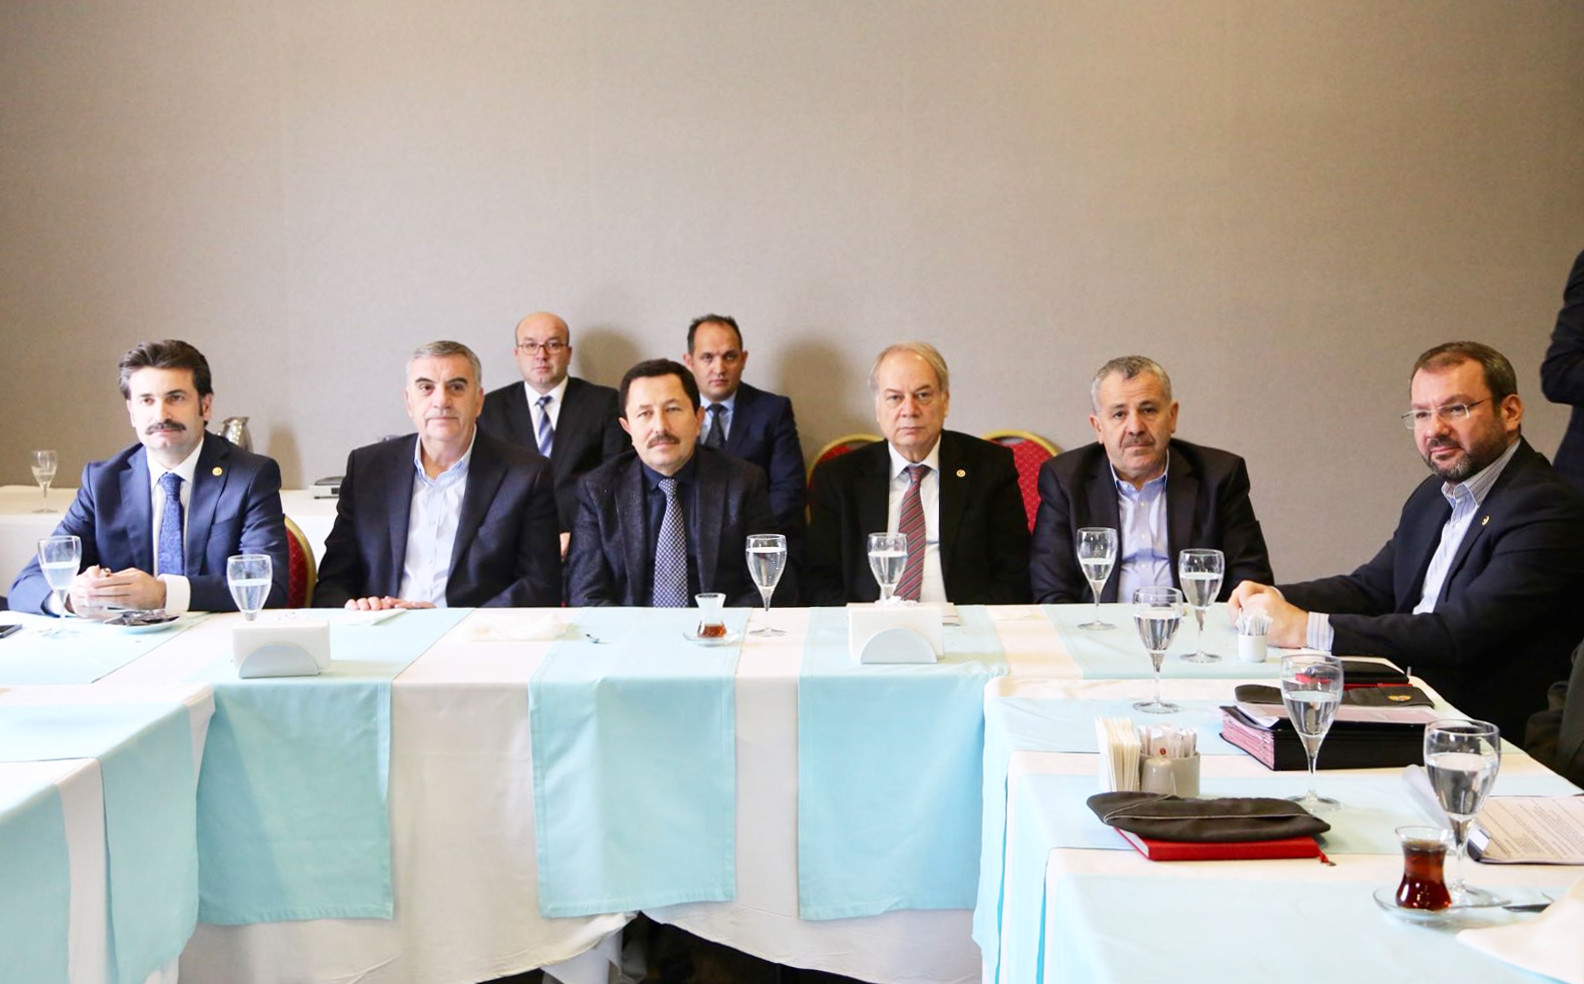 Vali İrfan Balkanlıoğlu “2017 Yılı Değerlendirme Toplantısı”na Başkanlık Etti